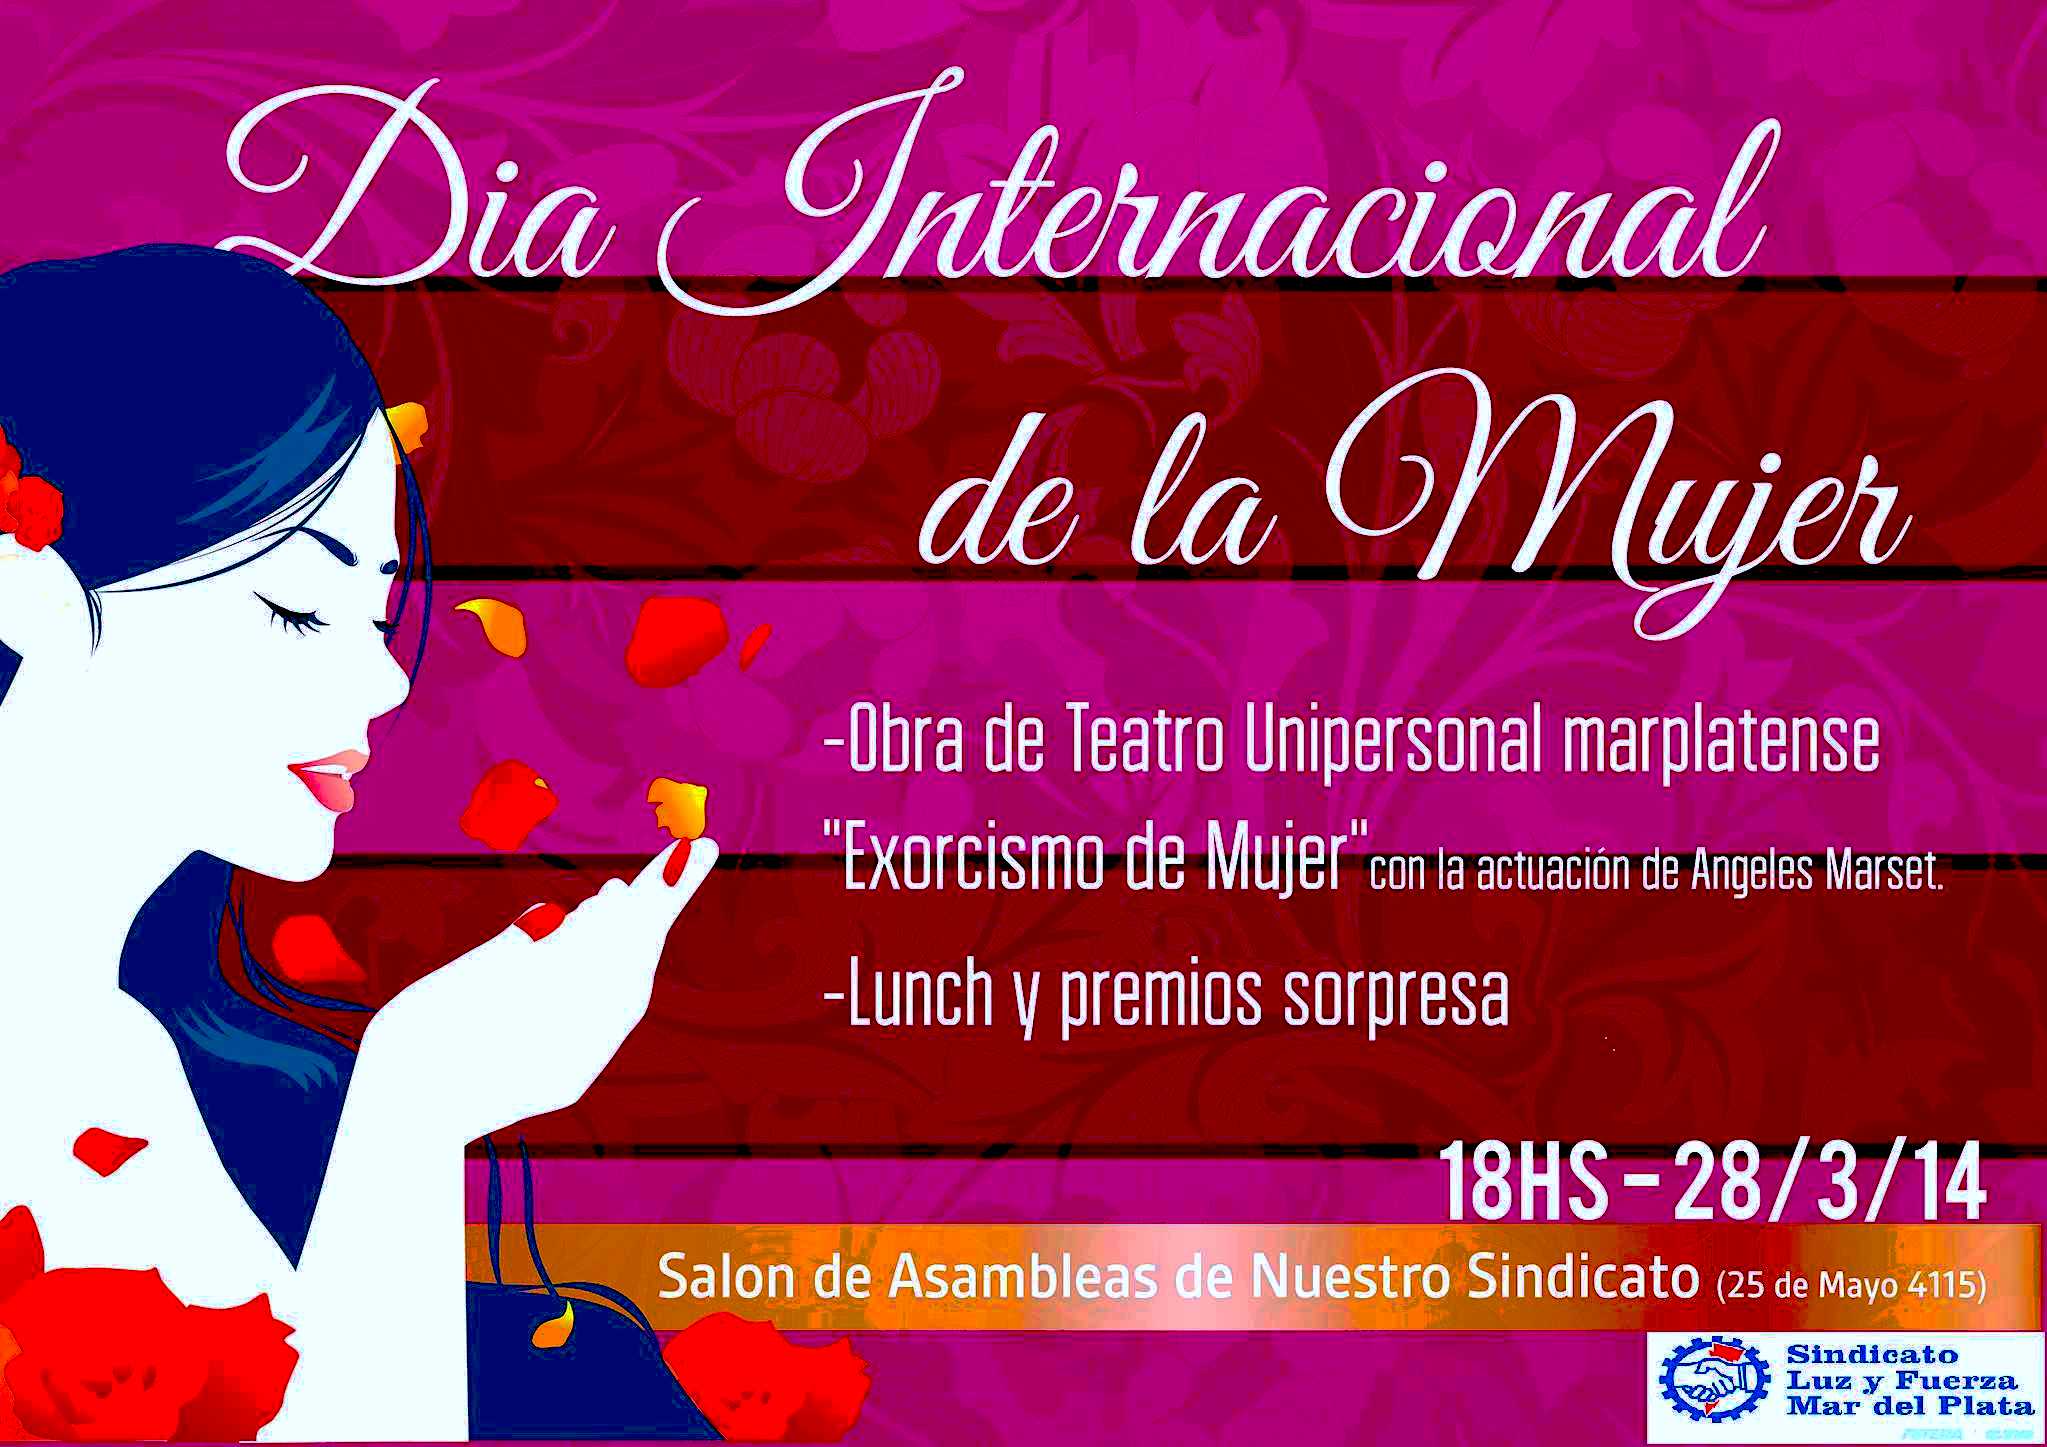 Compañera: Viernes 28 de Marzo - 18 horas - Conmemoraron el Día Internacional de la Mujer Trabajadora